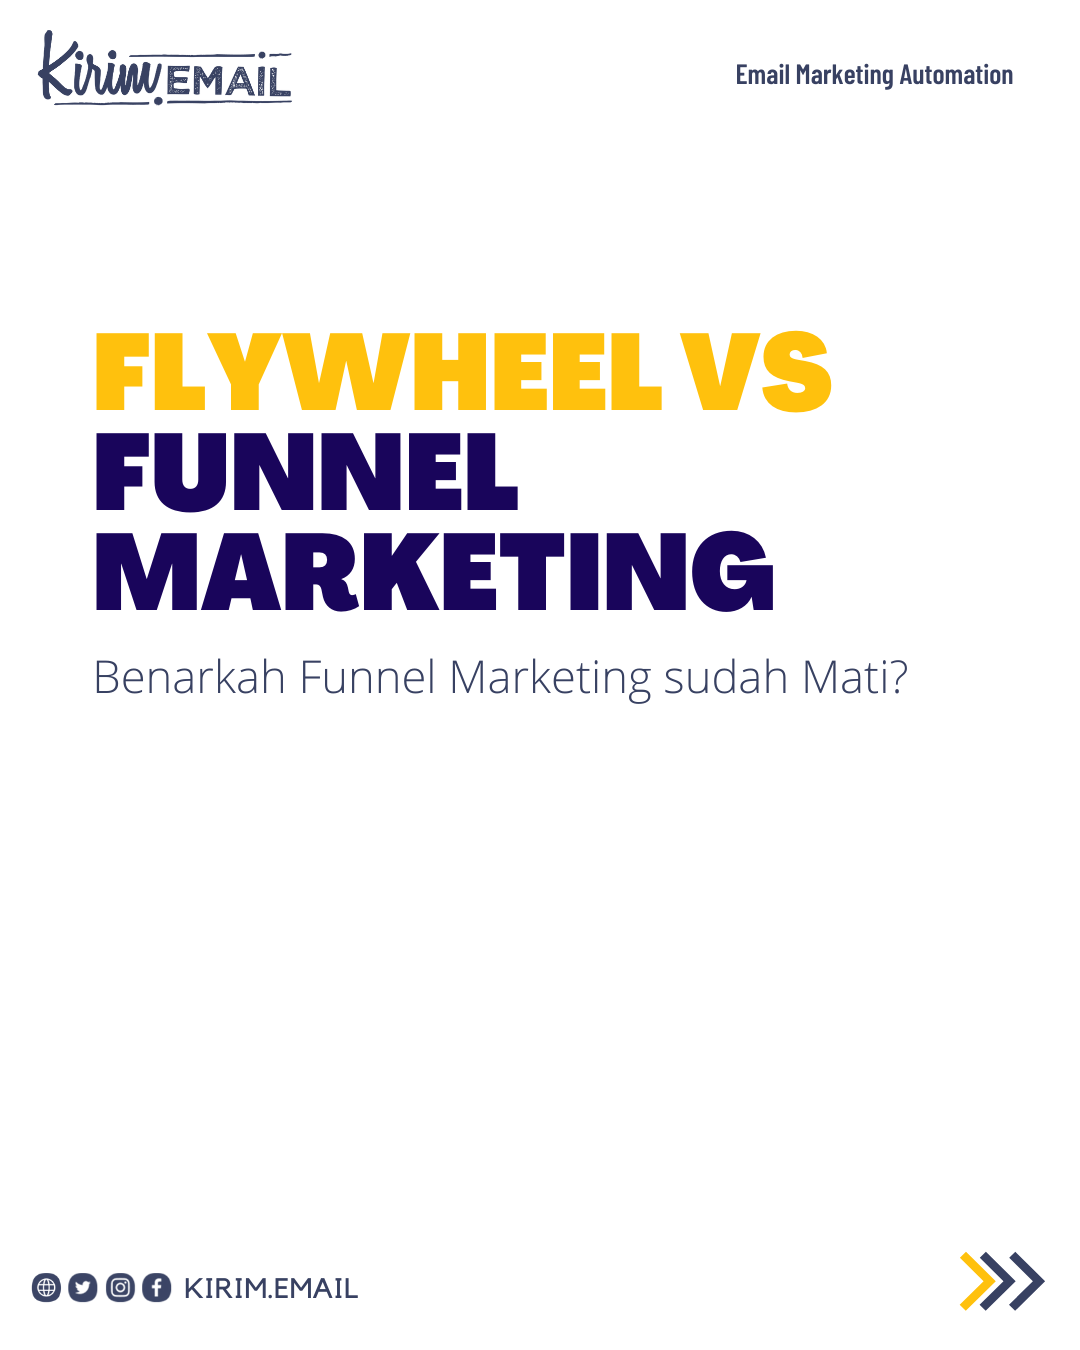 Flywheel VS Funnel Marketing